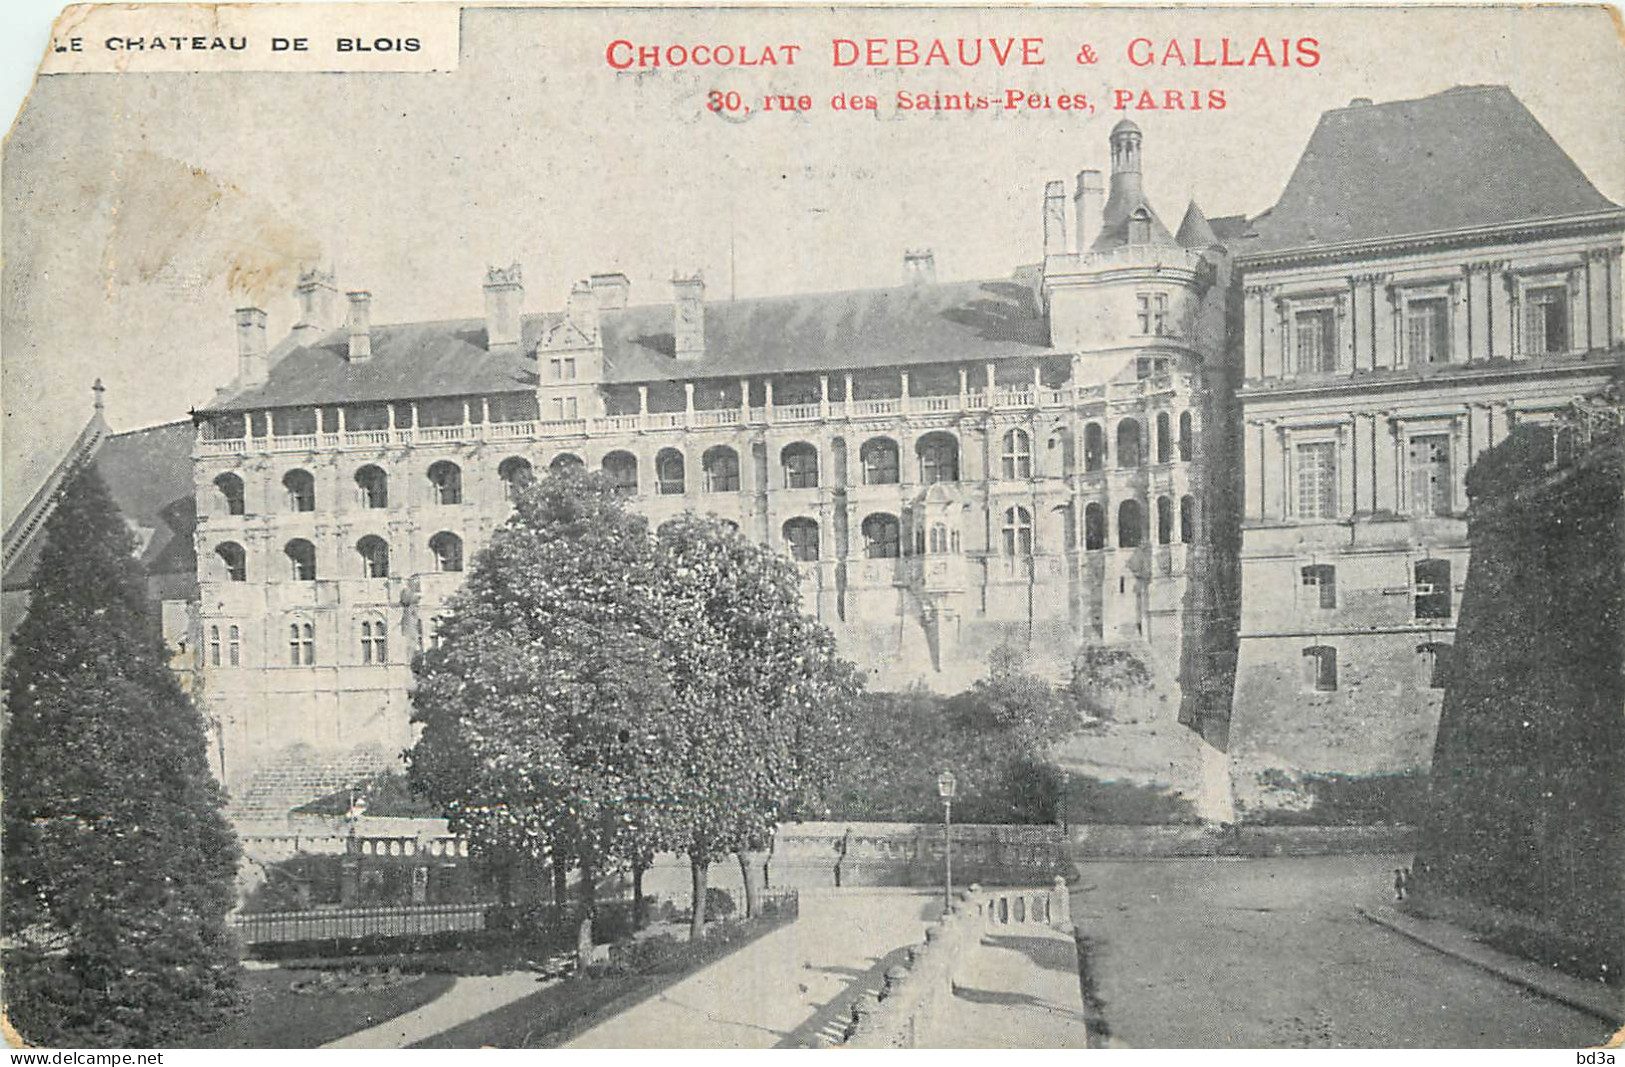 PUBLICITE - CHOCOLAT DEBAUVE & GALLAIS - PARIS - CHAREAU DE BLOIS - Publicidad